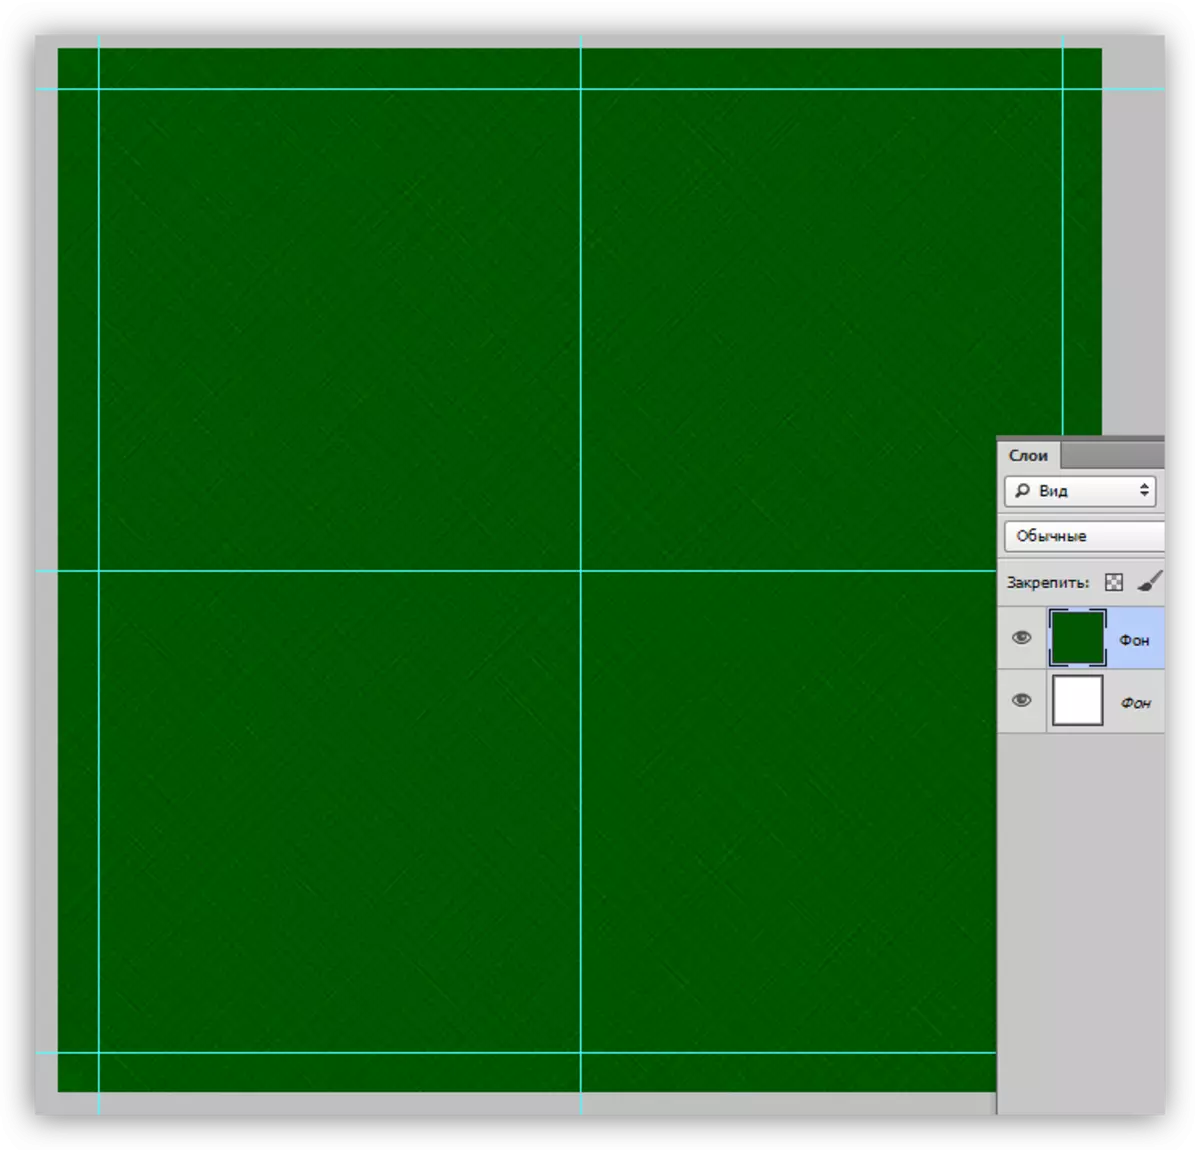 फ़ोटोशॉप में एक कस्टम पैटर्न बनाने के लिए अतिरिक्त केंद्रीय गाइड